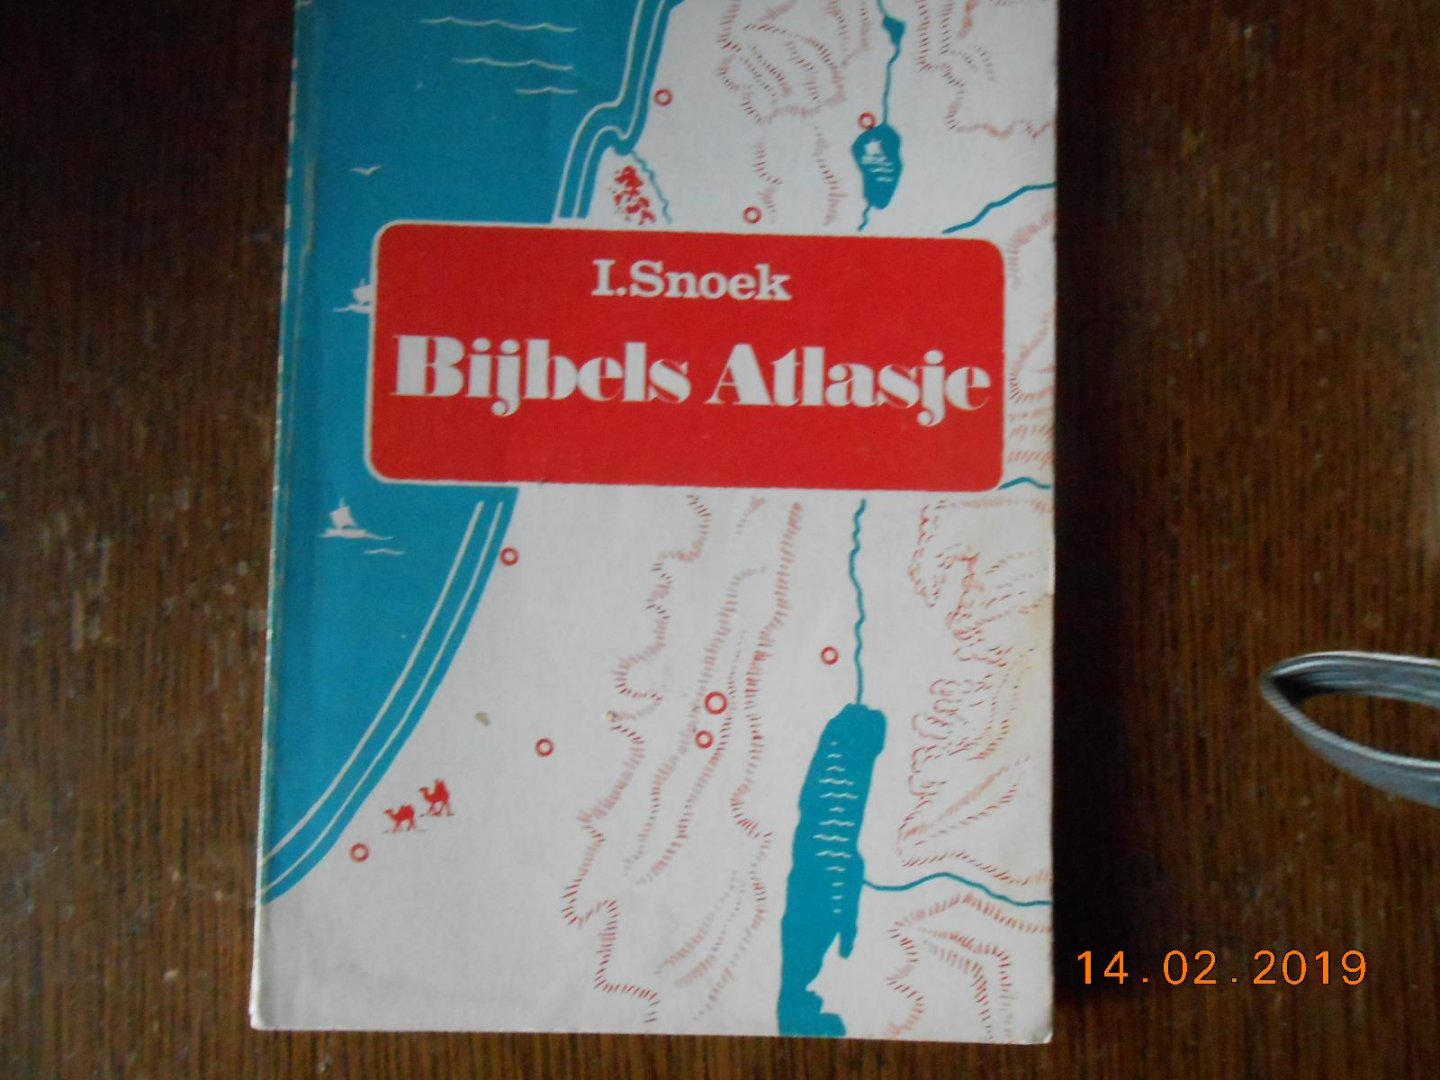 Snoek I - Atlasje by de bybelse geschiedenis / druk 6